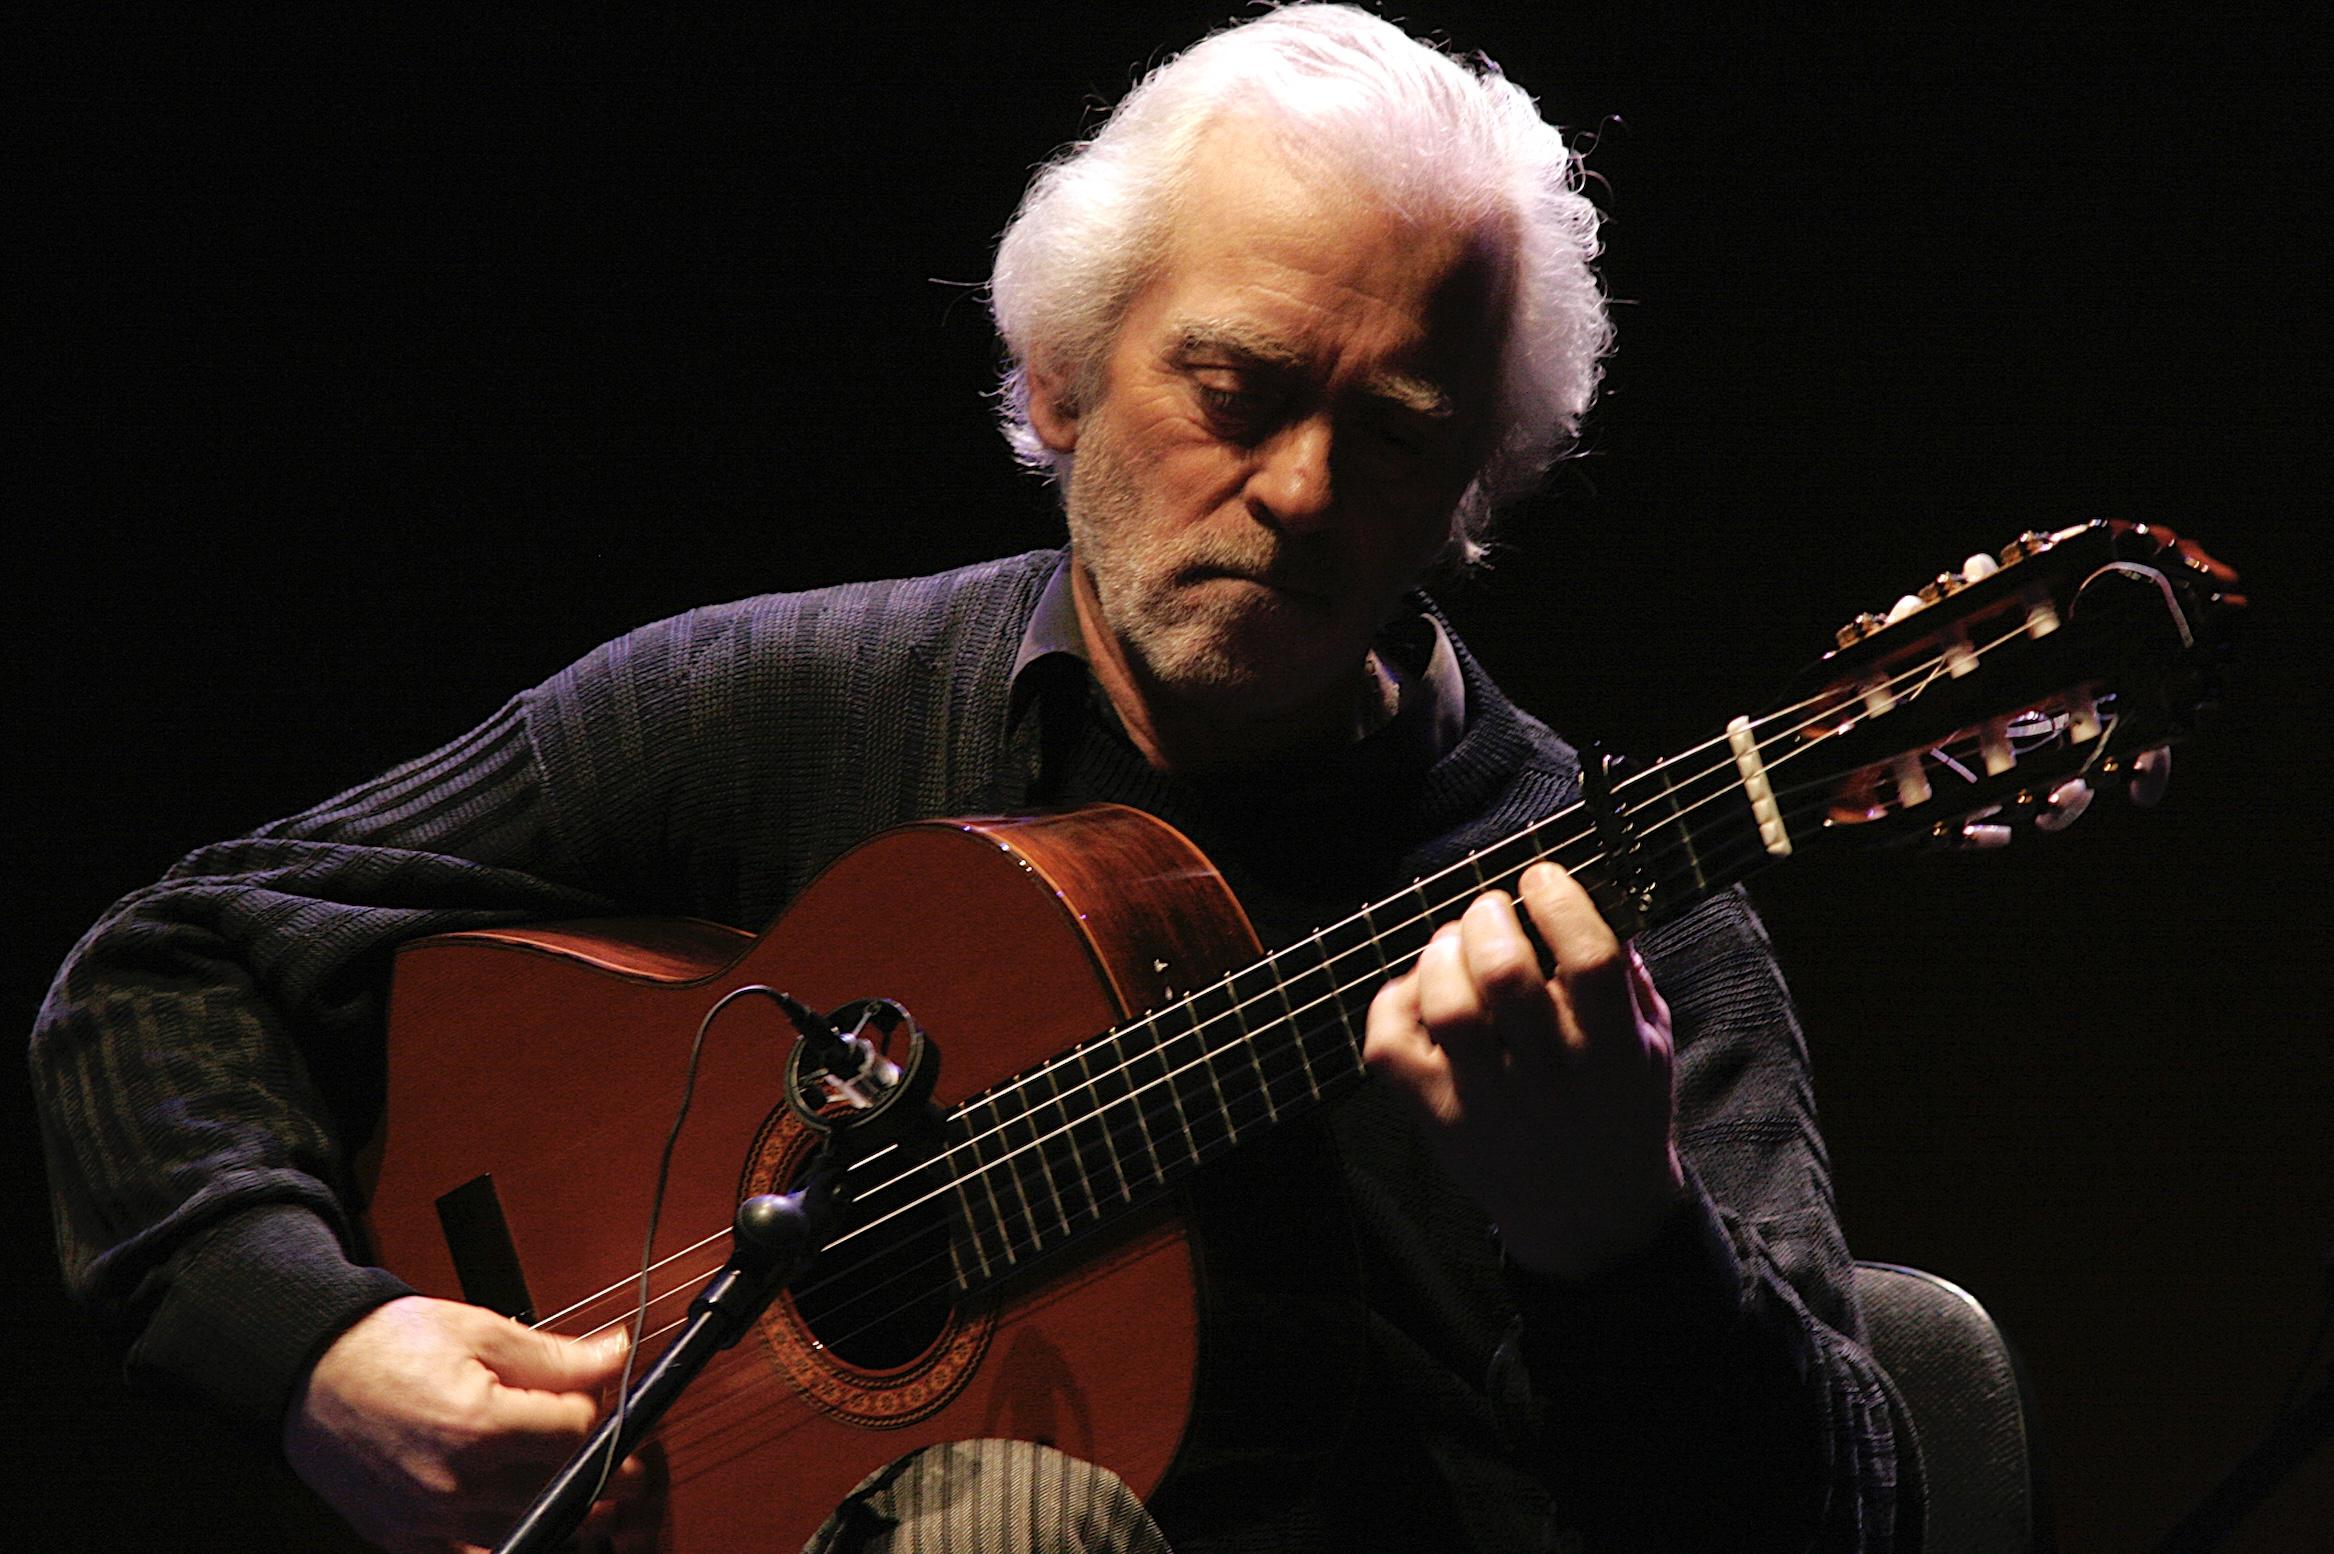 La Suma Flamenca homenajea a Manolo Sanlúcar el 20 de septiembre en Madrid